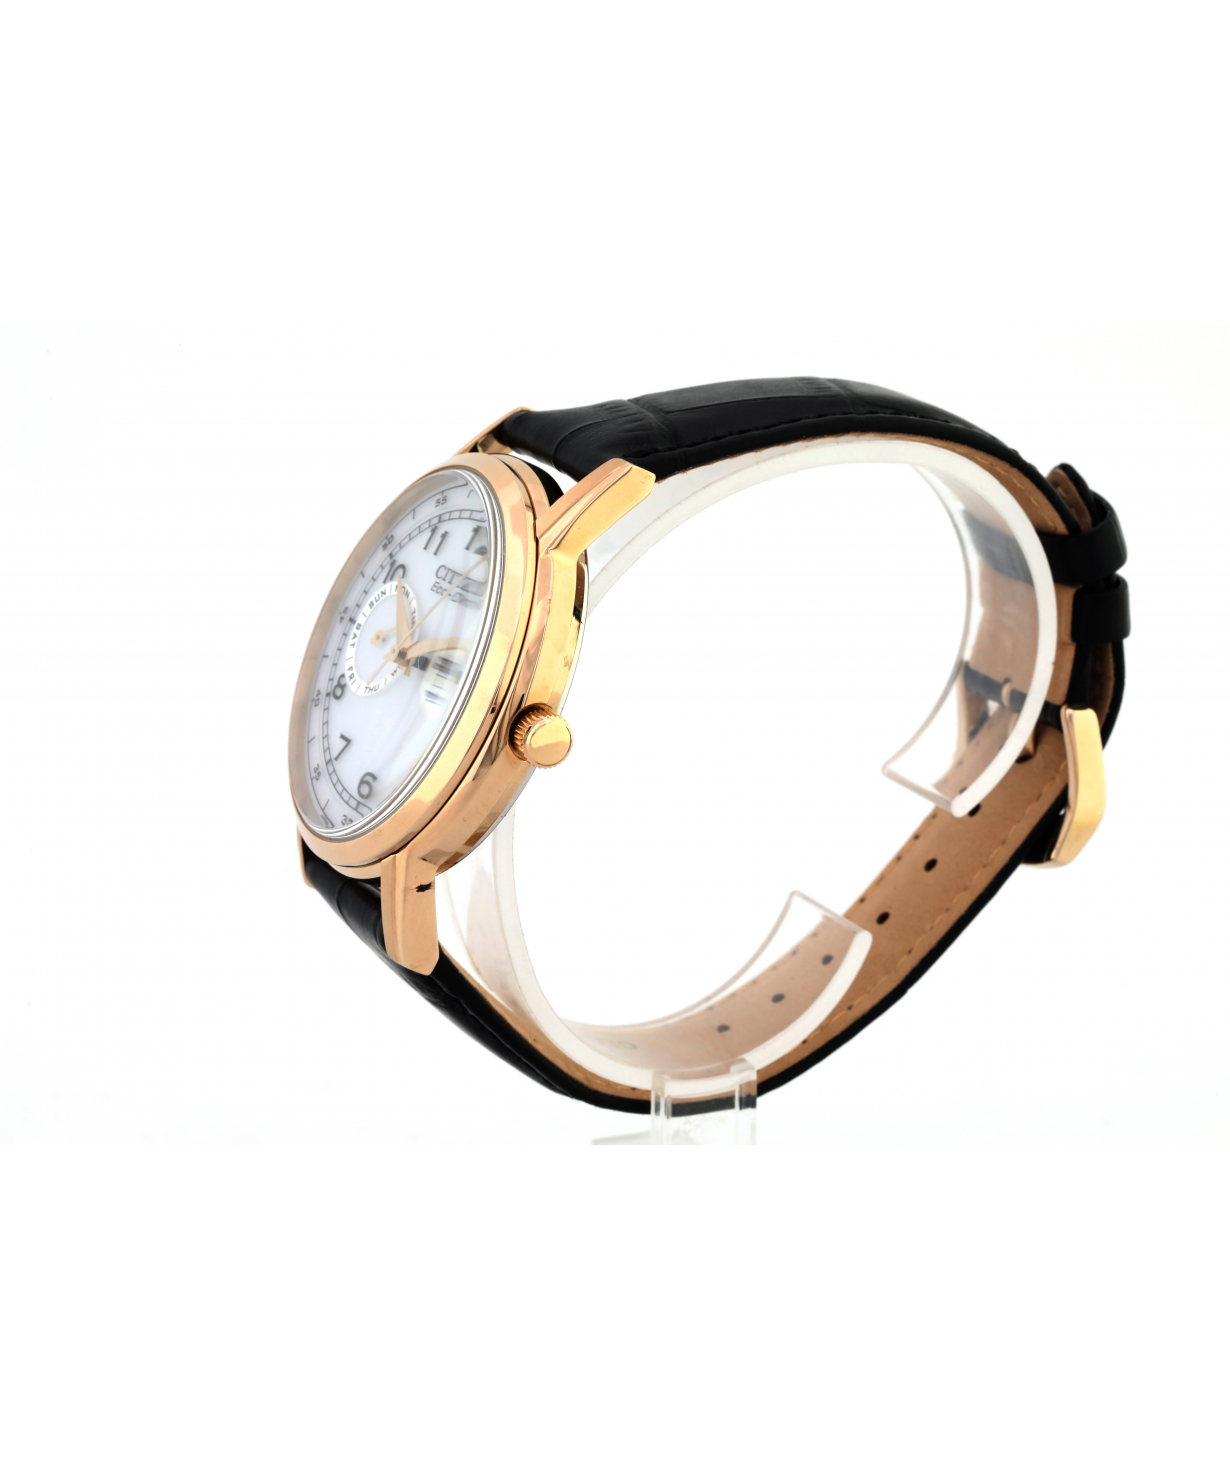 Wristwatch `Citizen` AO9003-16A